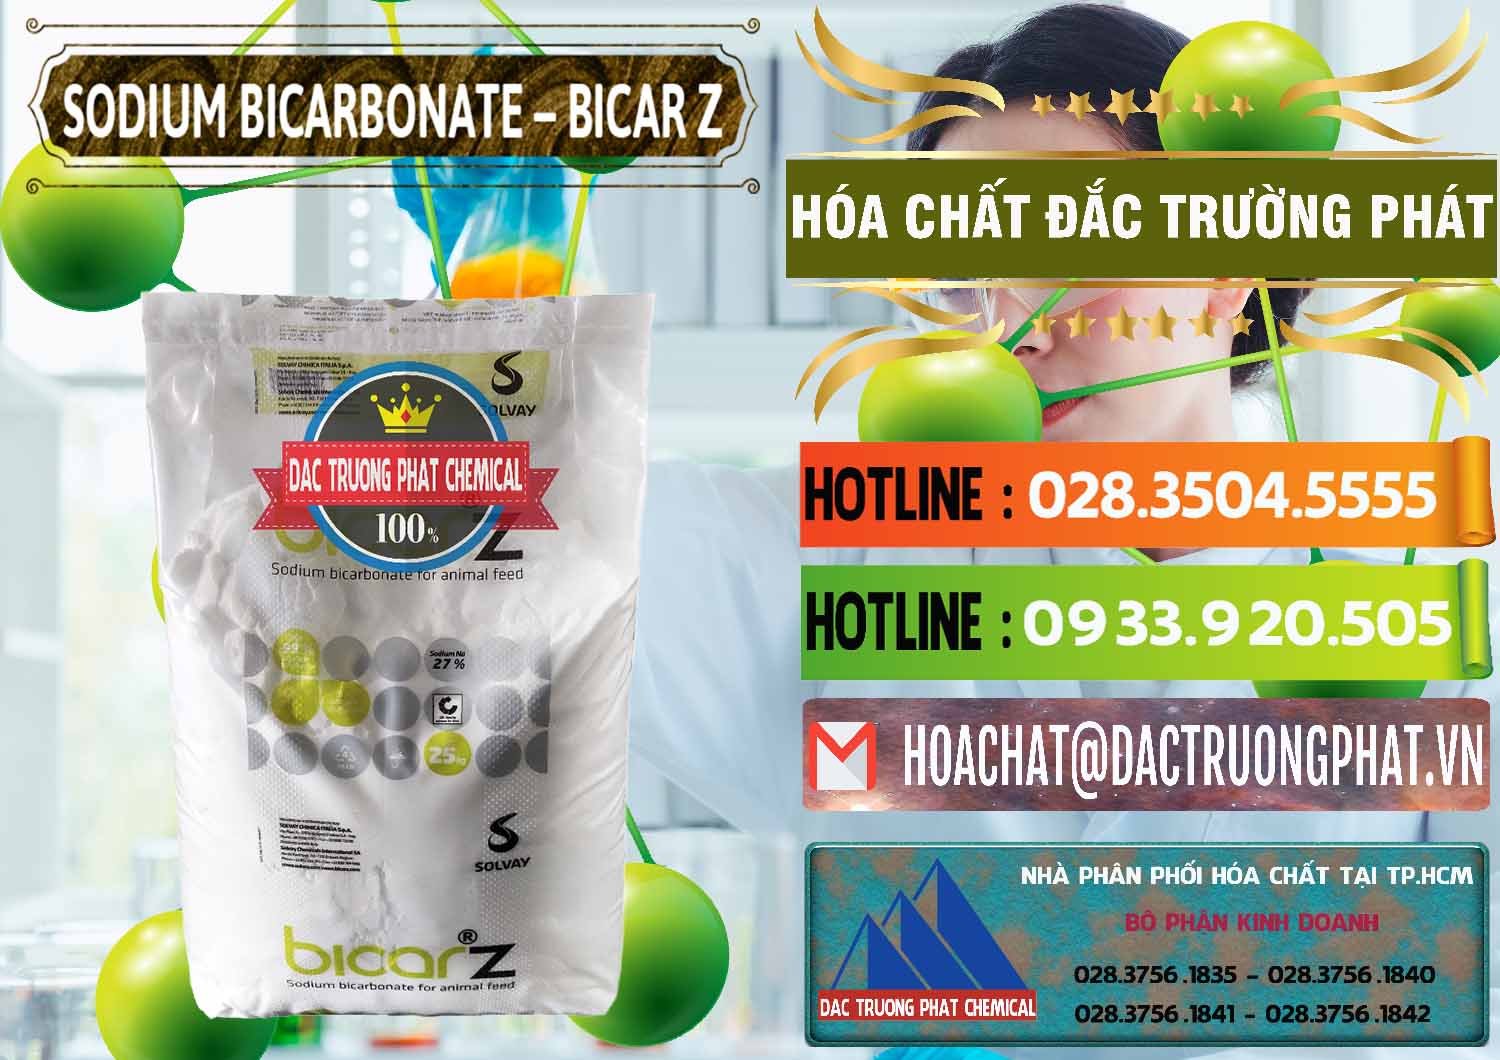 Cty chuyên phân phối & bán Sodium Bicarbonate – NaHCO3 Bicar Z Ý Italy Solvay - 0139 - Kinh doanh và cung cấp hóa chất tại TP.HCM - cungcaphoachat.com.vn